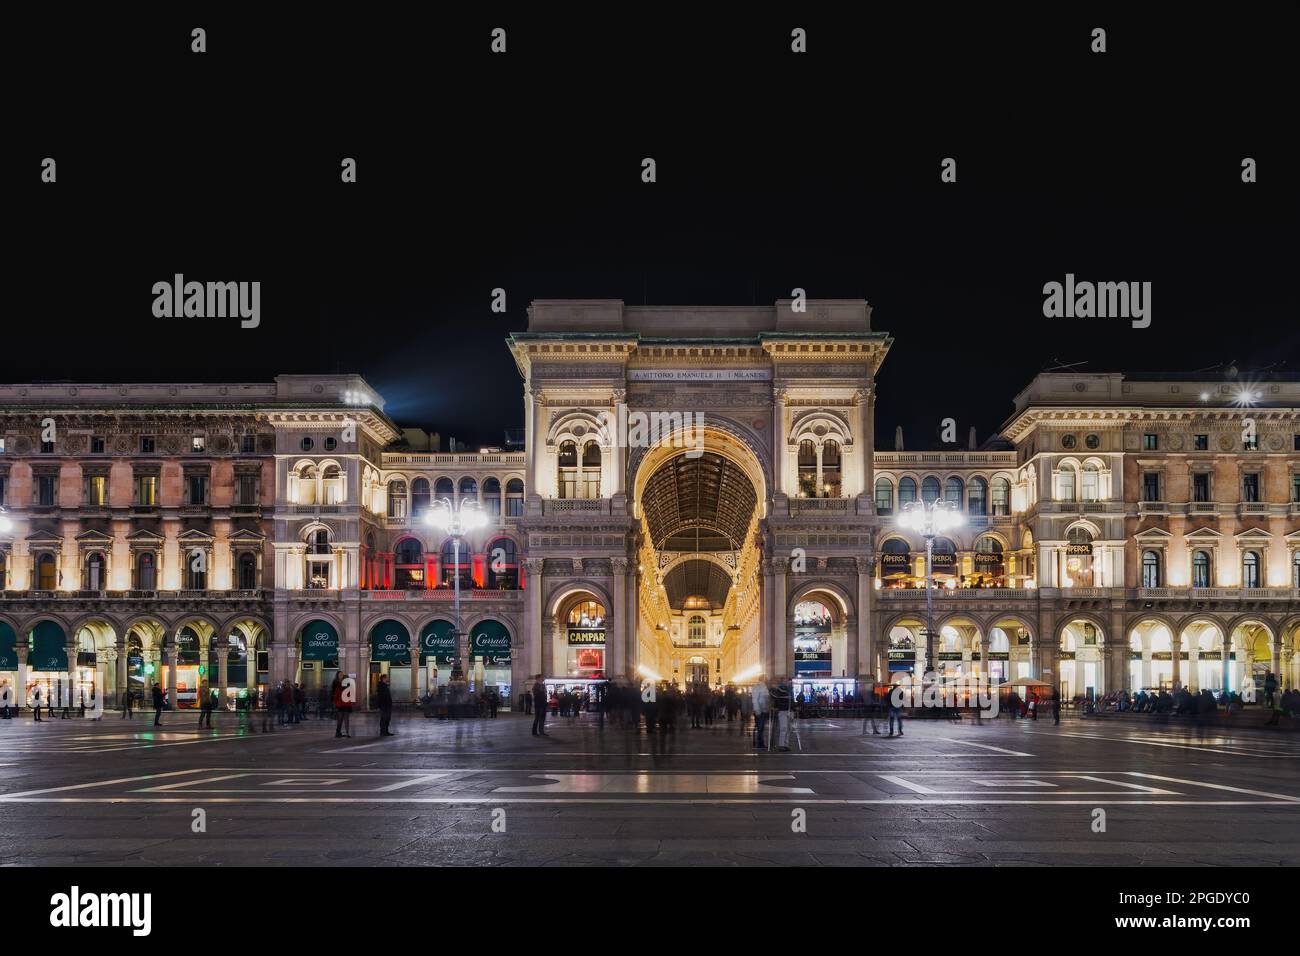 Milan, Italie illumina la galerie Vittorio Emanuele II la nuit, arcade du 19th siècle avec des façades de magasins et foule non identifiable à la place principale du Duomo. Banque D'Images